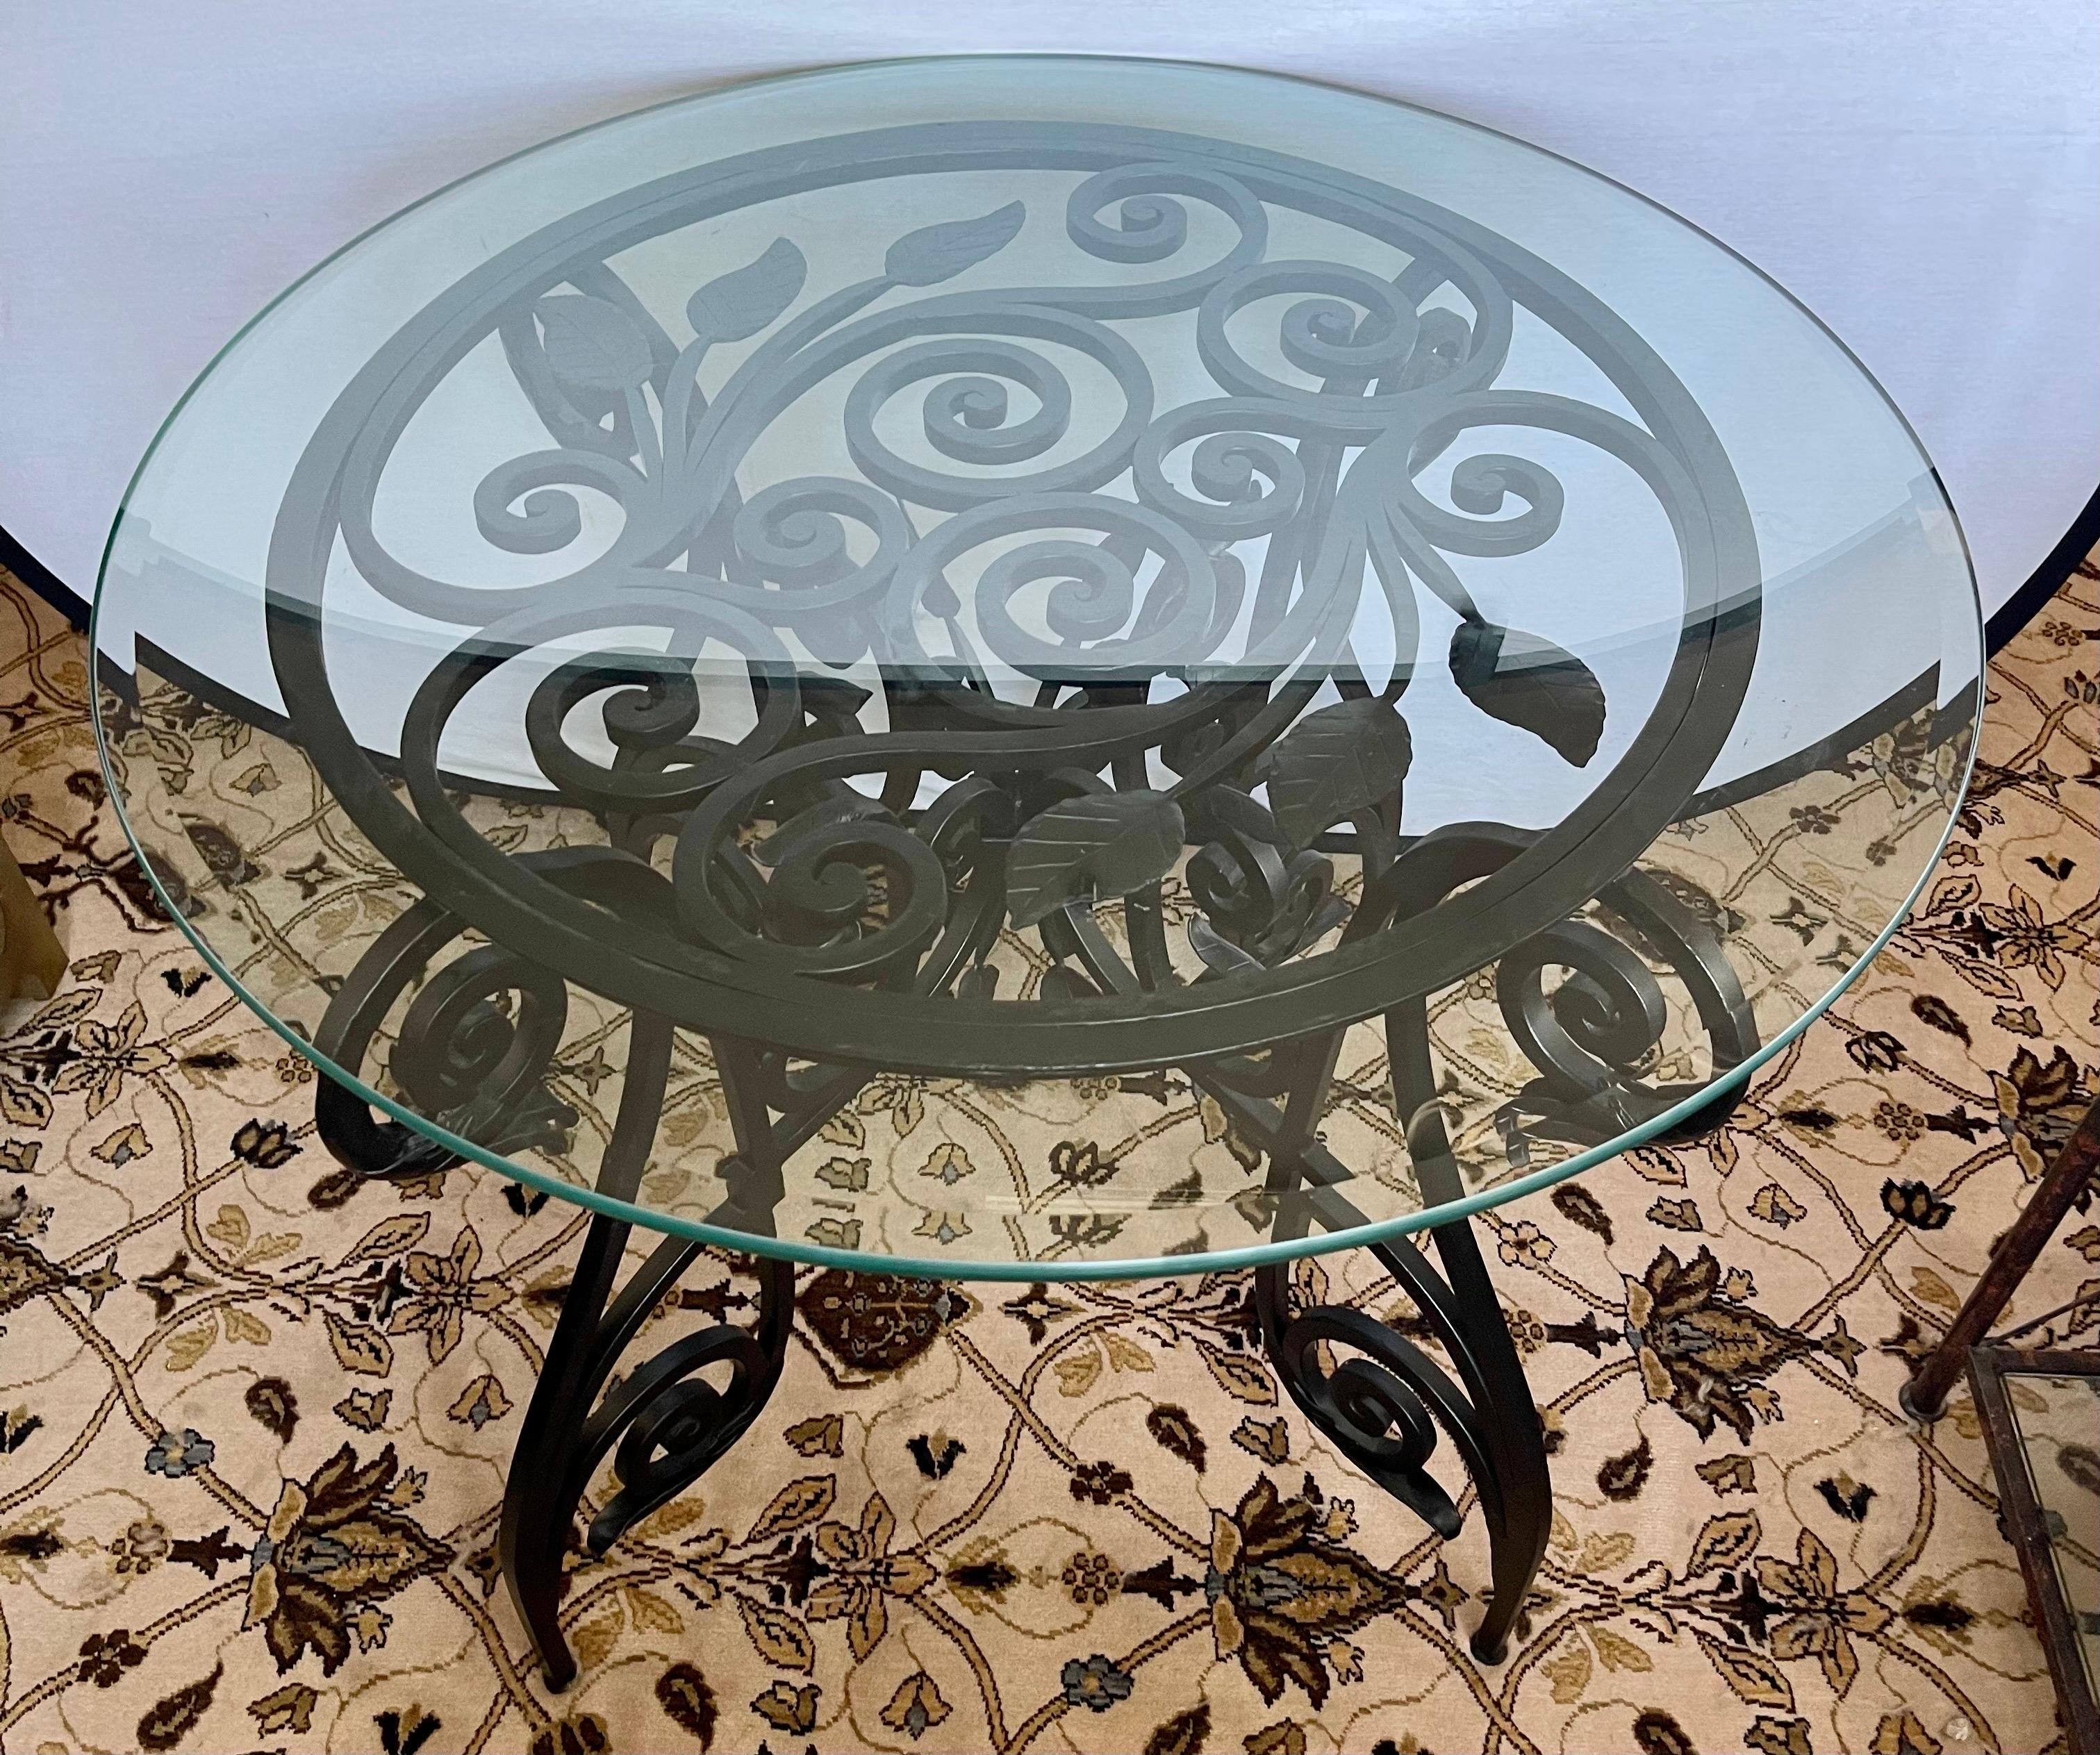 Atemberaubende benutzerdefinierte Maison Jansen Stil Eisen und Glas Mitte oder Foyer Tisch mit aus dieser Welt Detail zu Eisen skulpturale Basis. Die Basis allein wiegt 120 Pfund und die Glasplatte, die 0,5 Zoll dick ist, wiegt zusätzlich 50 Pfund.